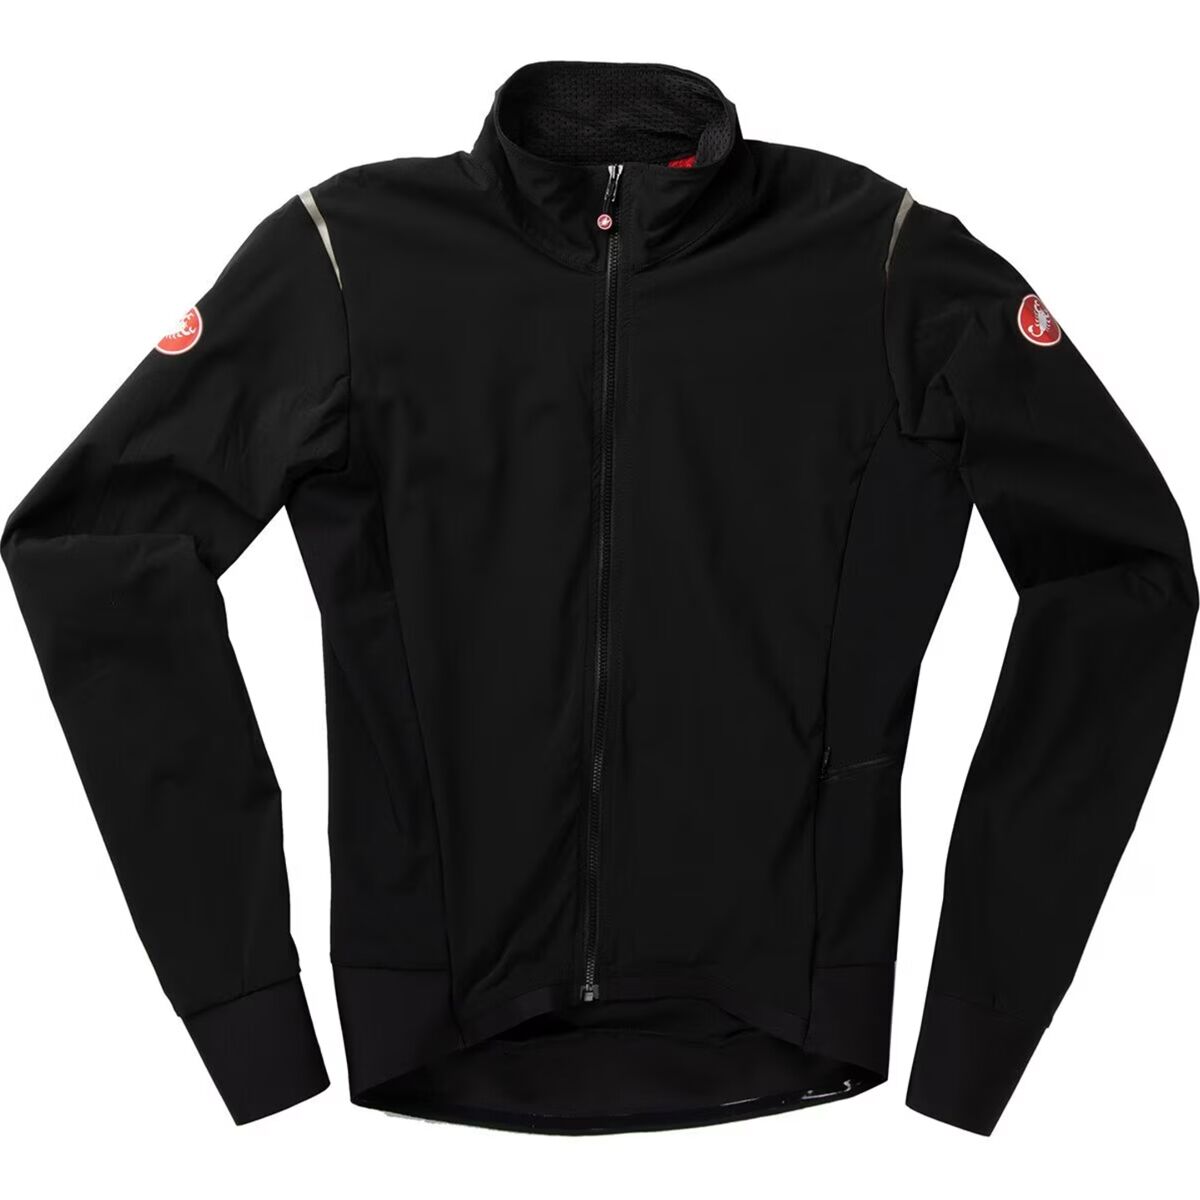 Castelli Alpha Flight RoS Limited Edition Jacket - Men's